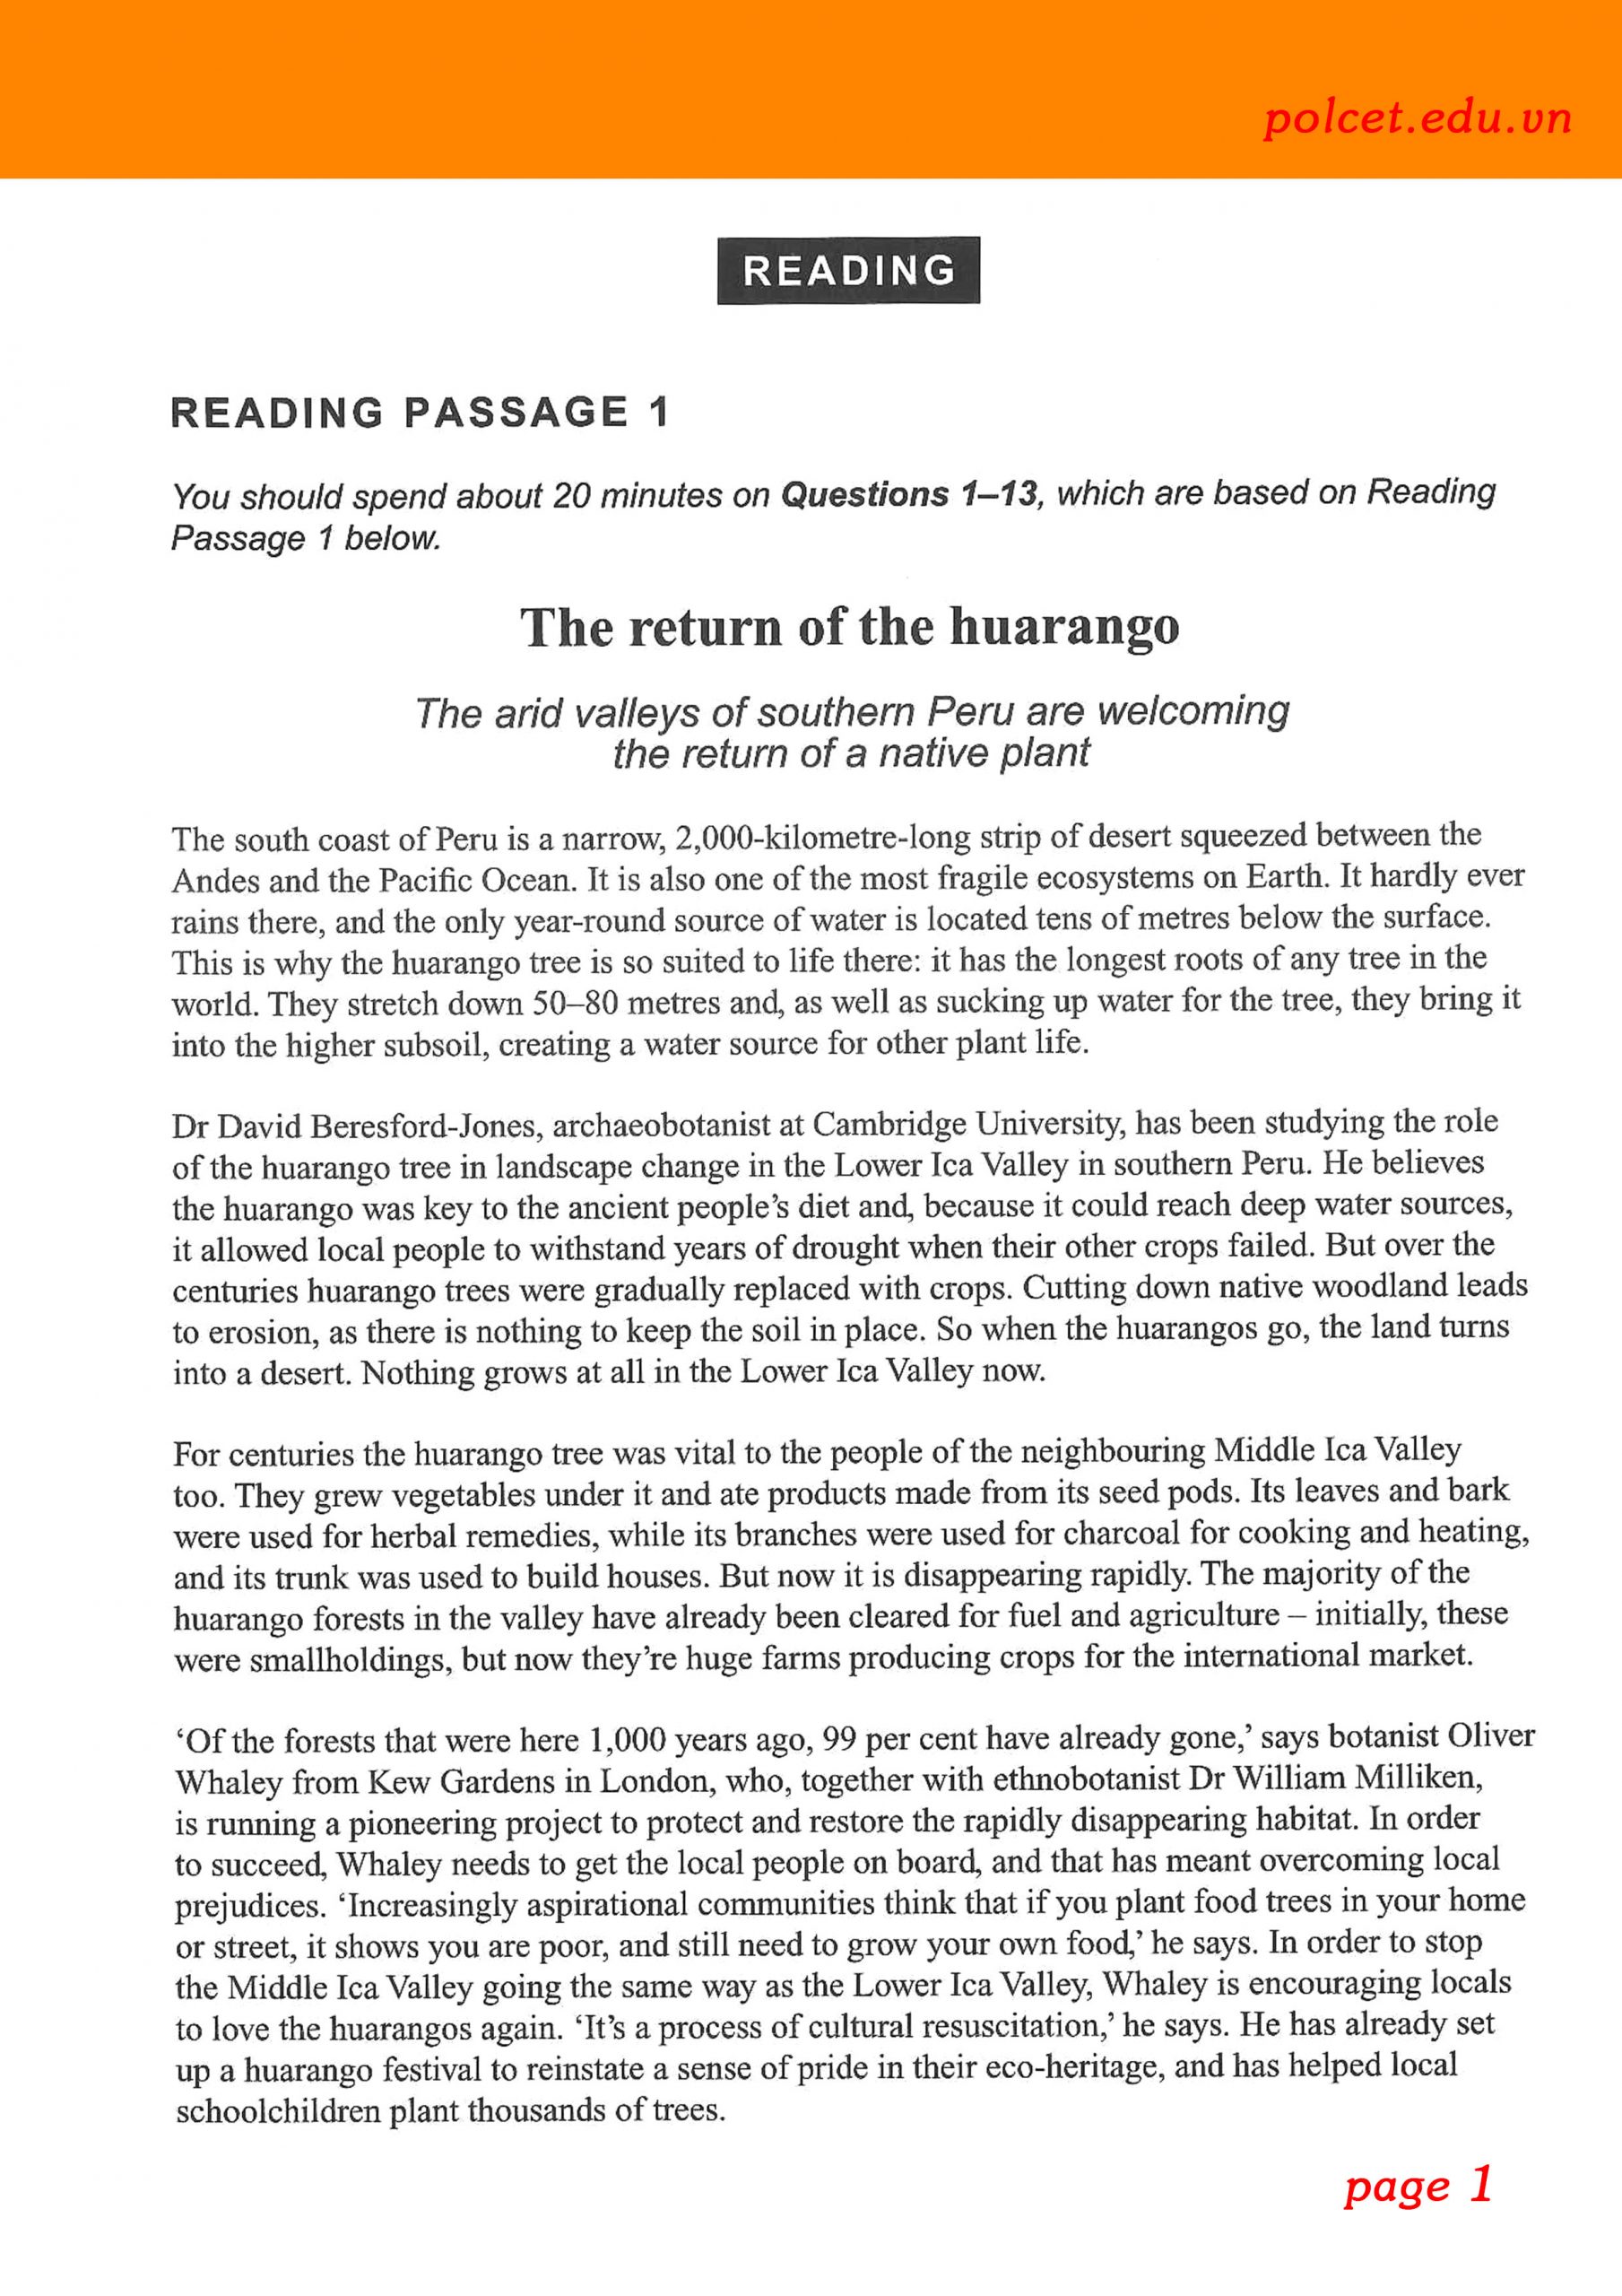 4 Reading passage 1 polcet.edu scaled